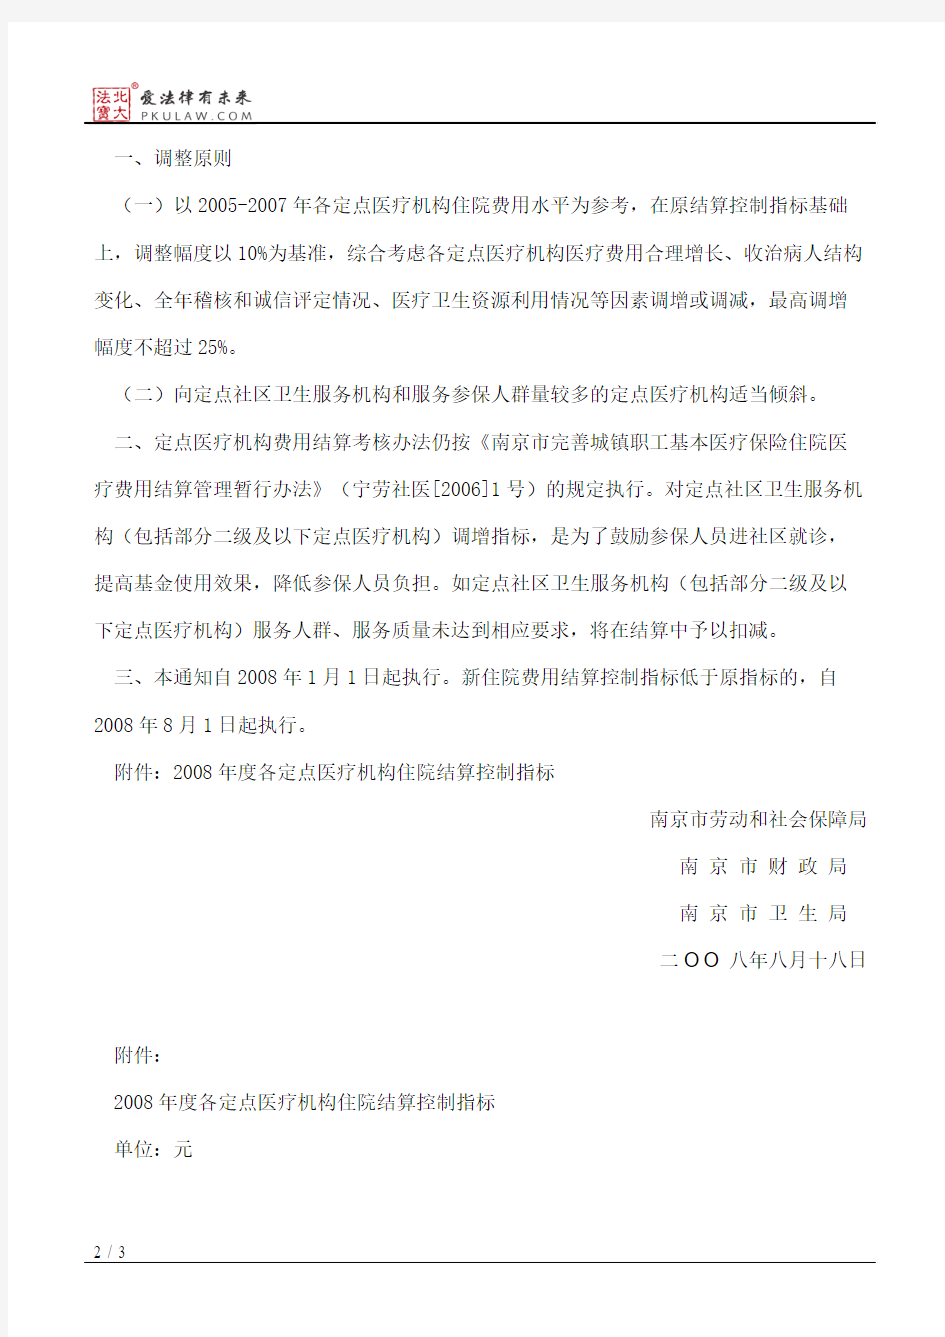 南京市劳动和社会保障局、南京市财政局、南京市卫生局关于调整城